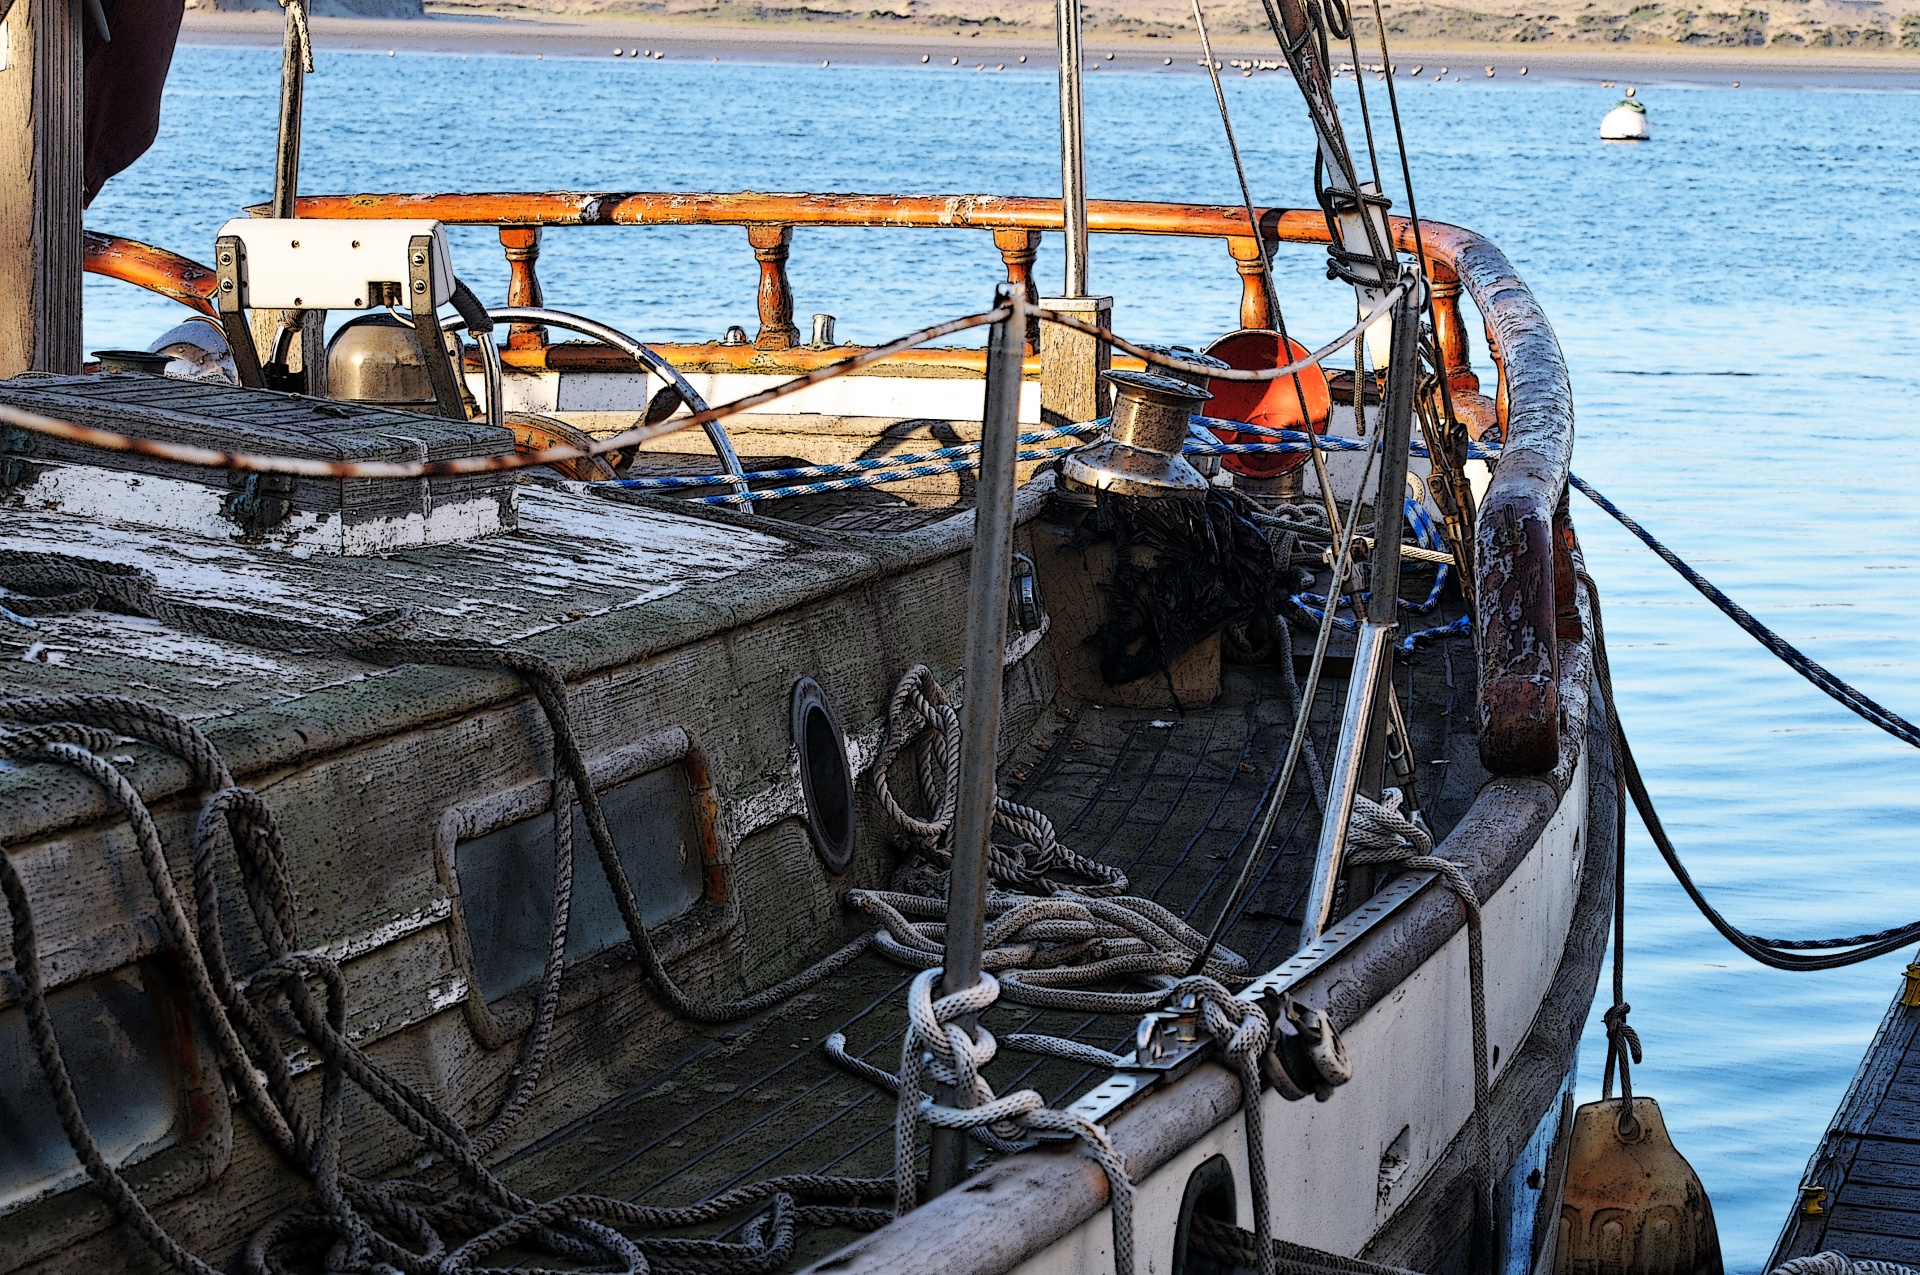 Old Sailboat